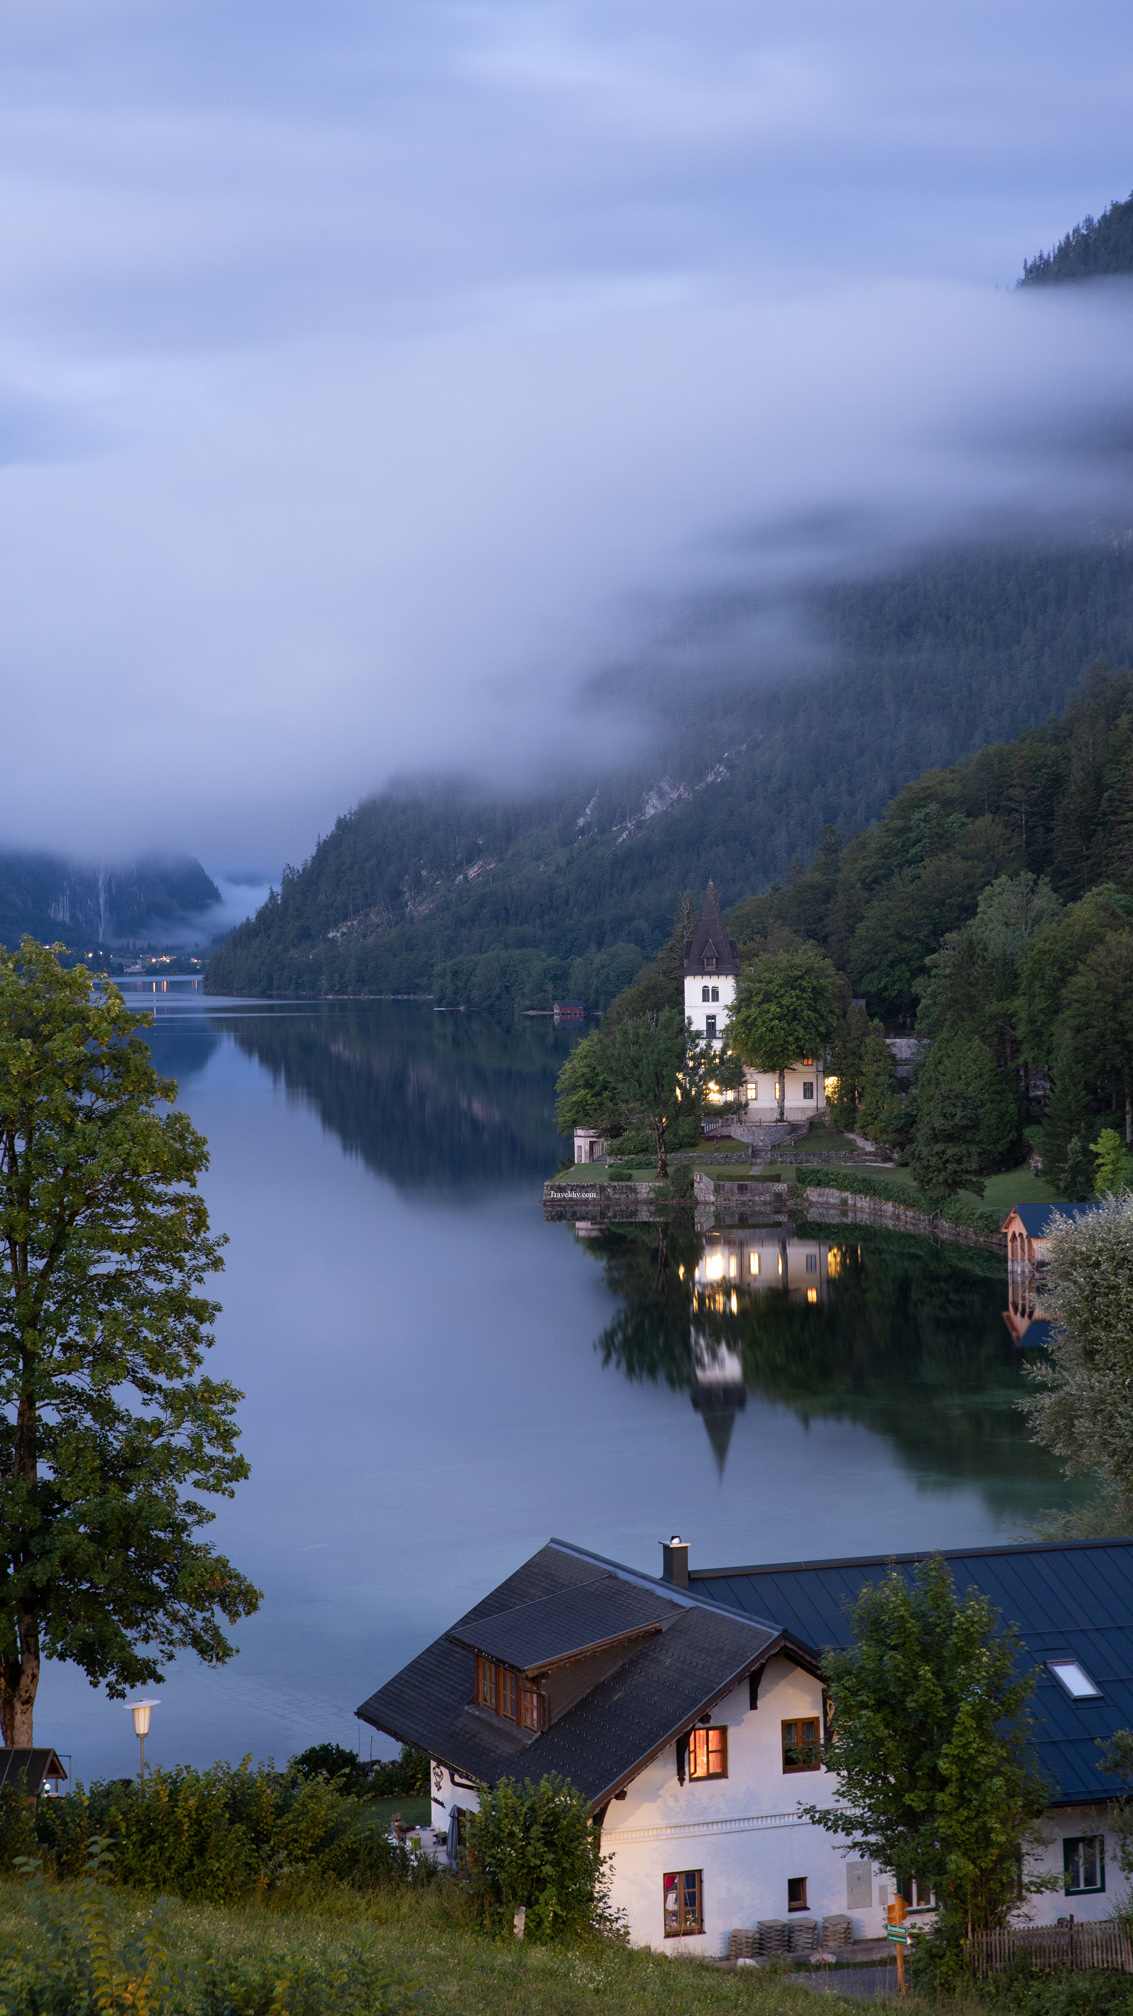 أجمل بحيرات النمسا، التي لم يتم نشرها في وسائل التواصل الاجتماعي !!